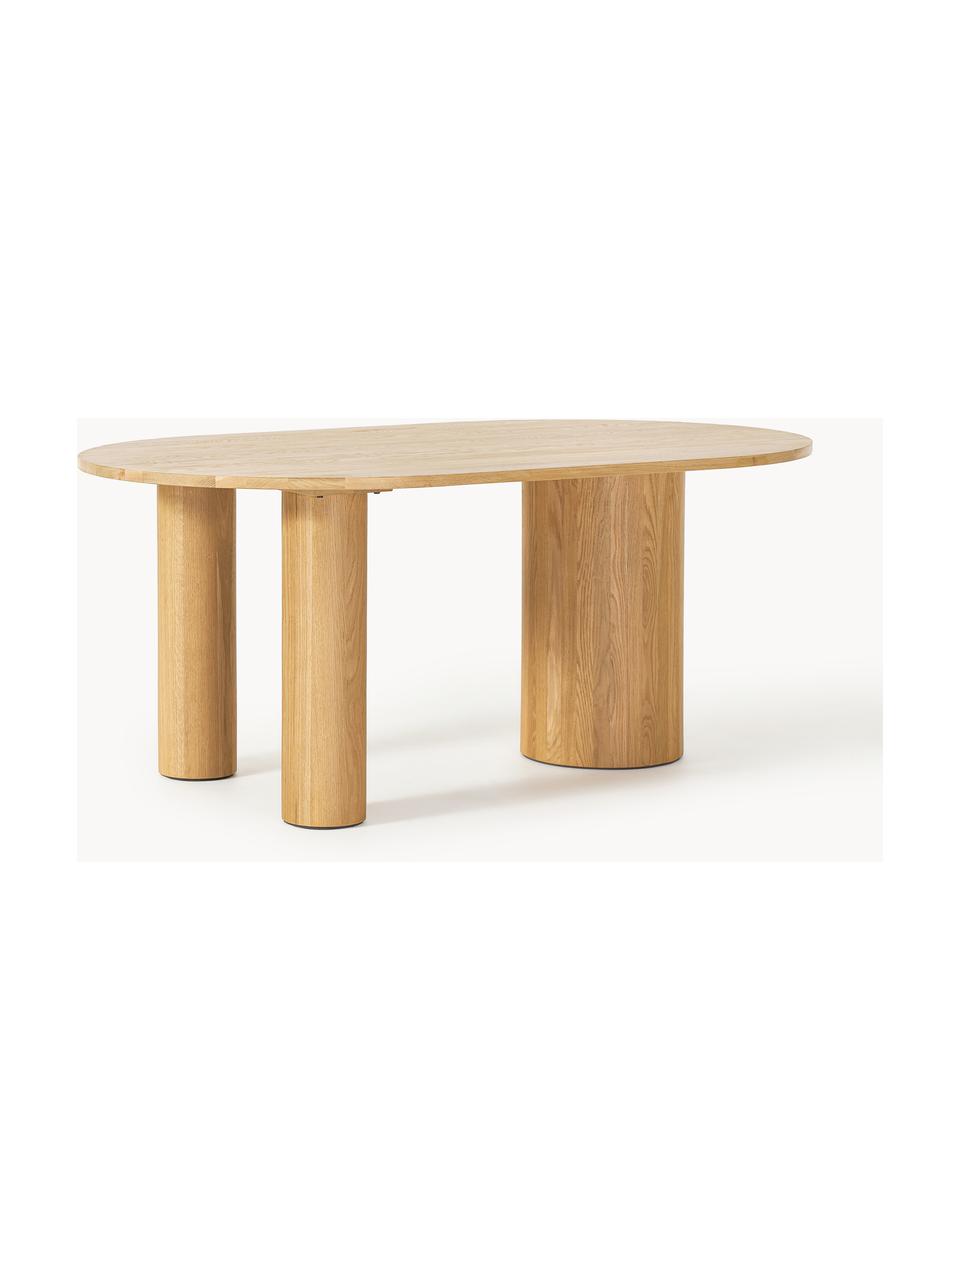 Oválny jedálenský stôl Dunia, 180 x 110 cm, Masívne dubové drevo, ošetrené olejom
Tento produkt je vyrobený z trvalo udržateľného dreva s certifikátom FSC®., Dubové drevo, ošetrené svetlým olejom, Š 180 x H 110 cm